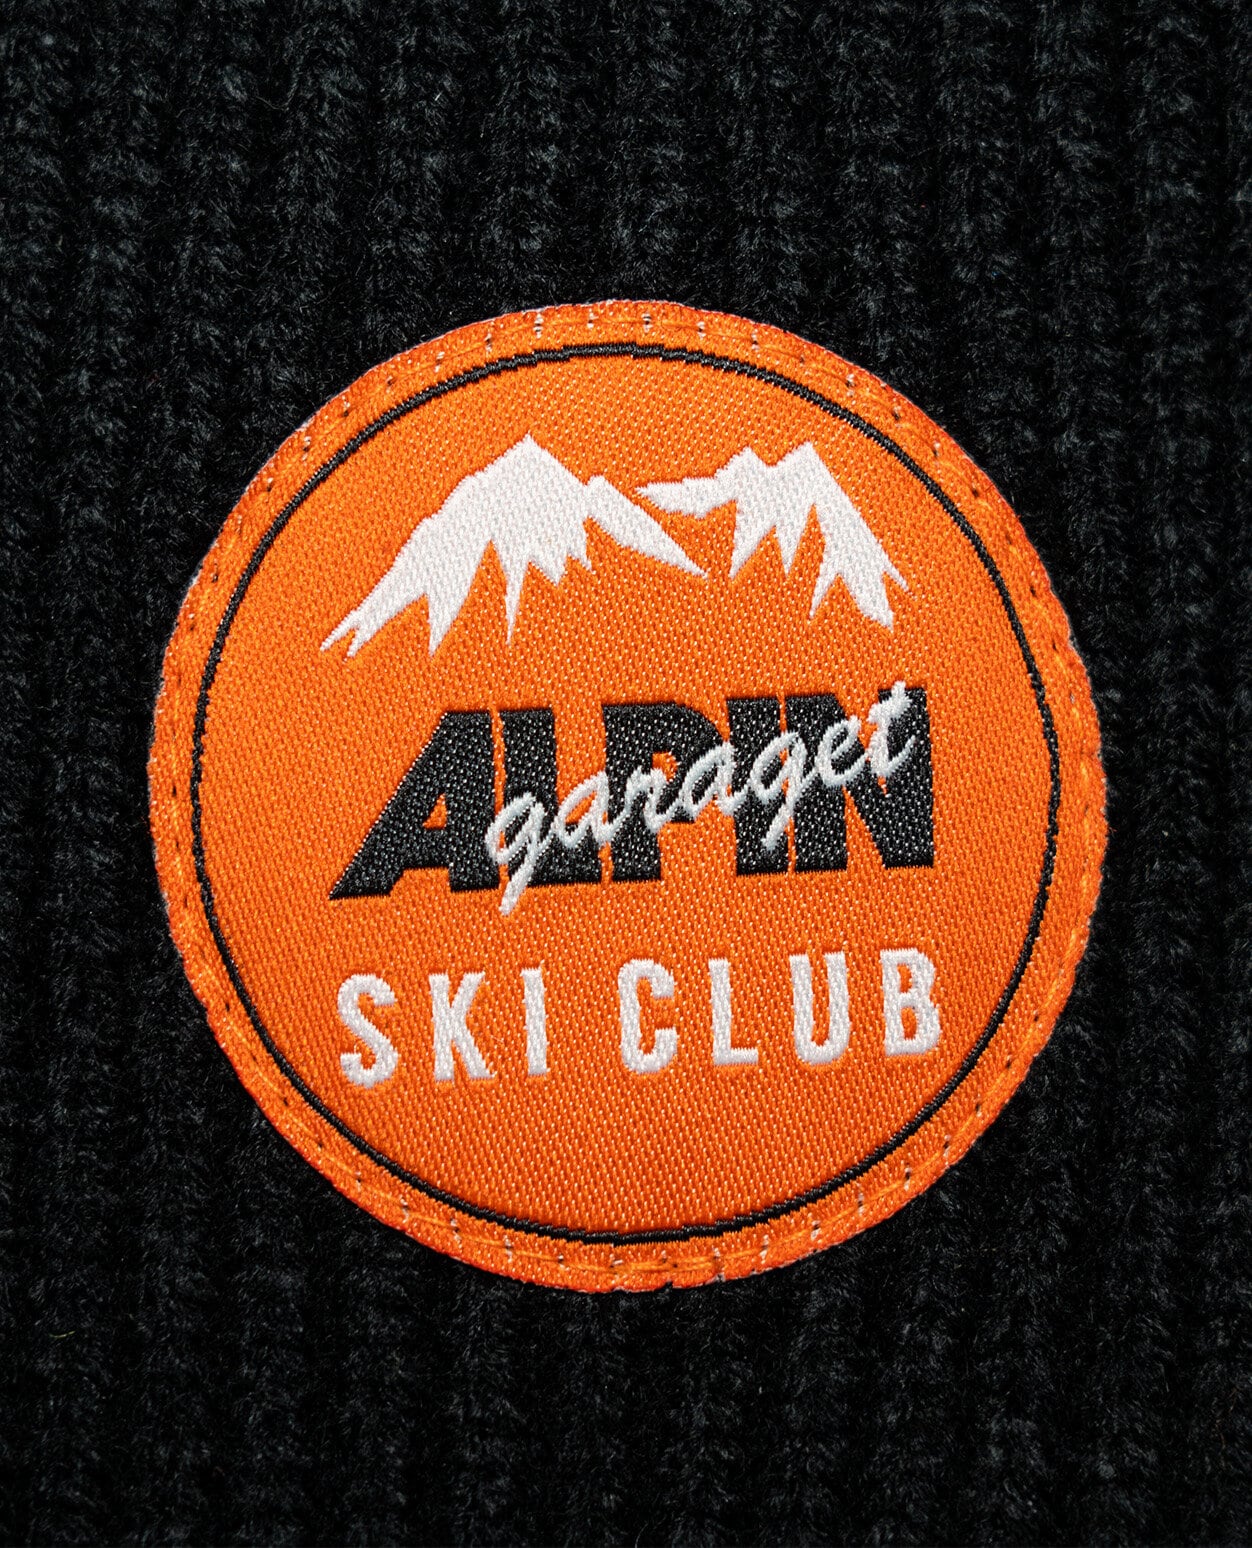 Alpingaraget Jana Ski Club Orange